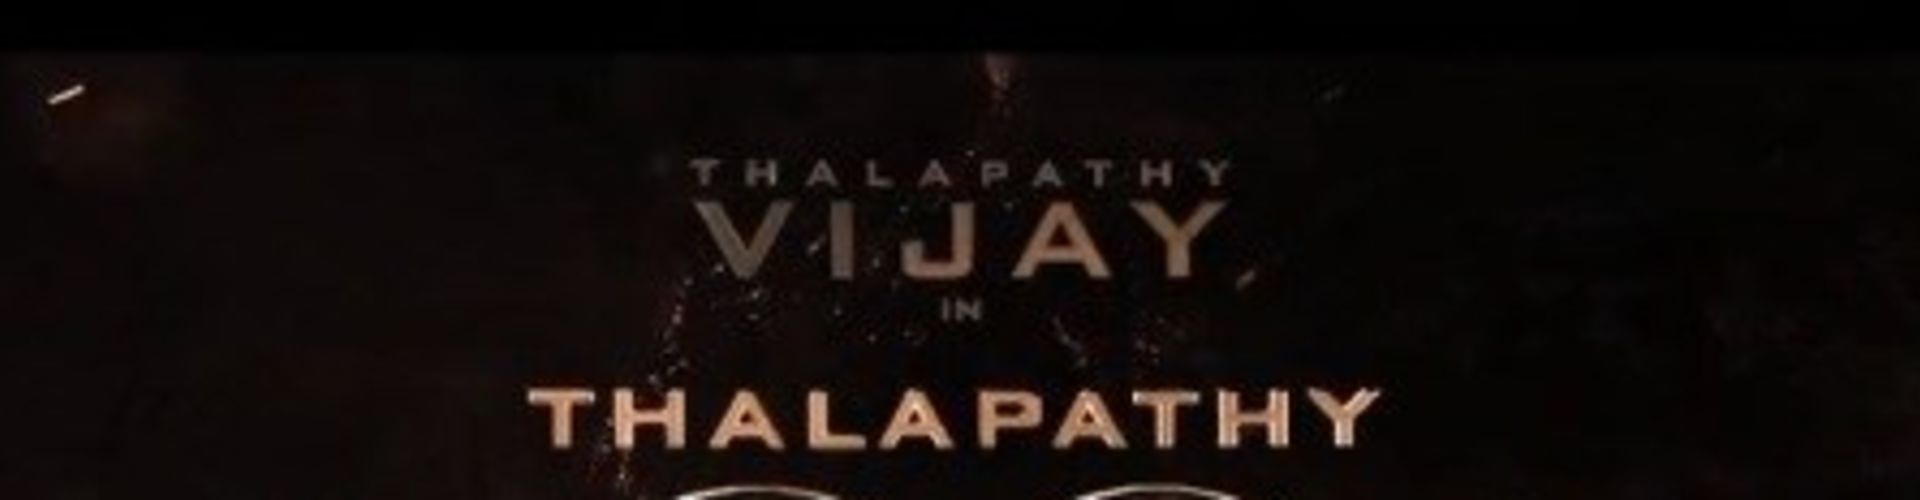 Venkat Prabhu And Vijay Collaborating For Thalapathy68